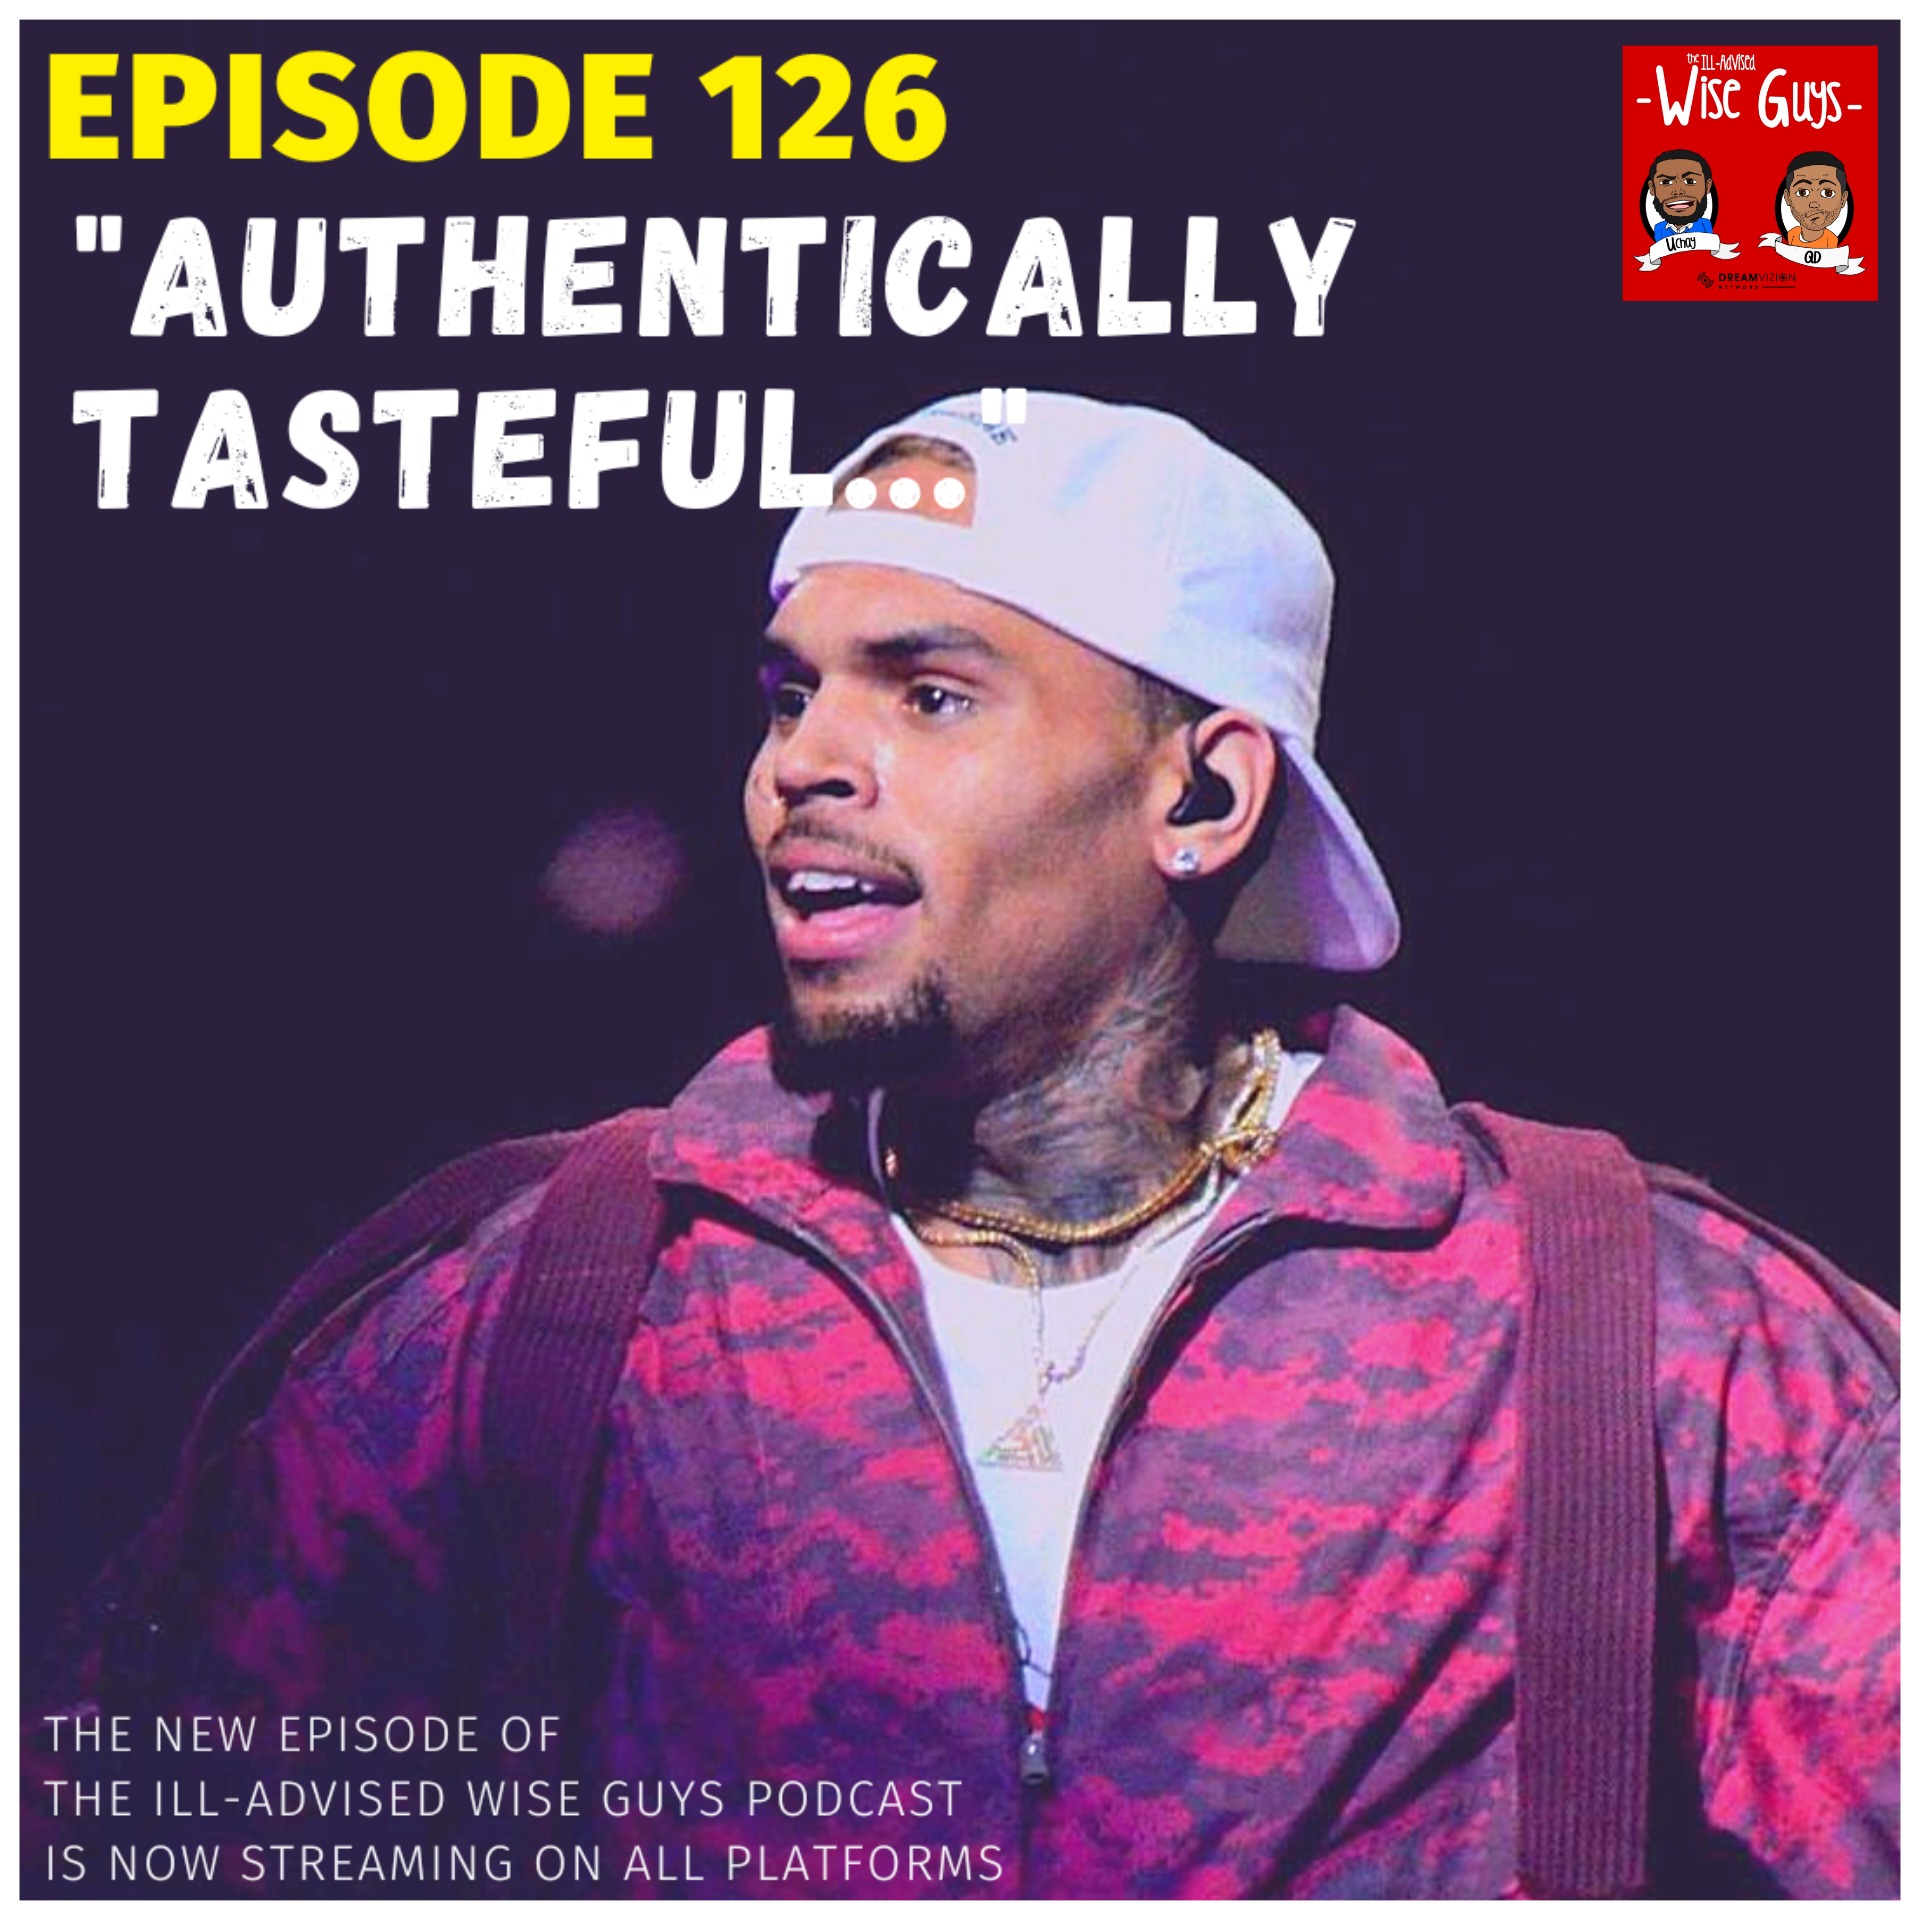 Episode 126 - "Authentically Tasteful..." (Feat. Camryn Suzanne)